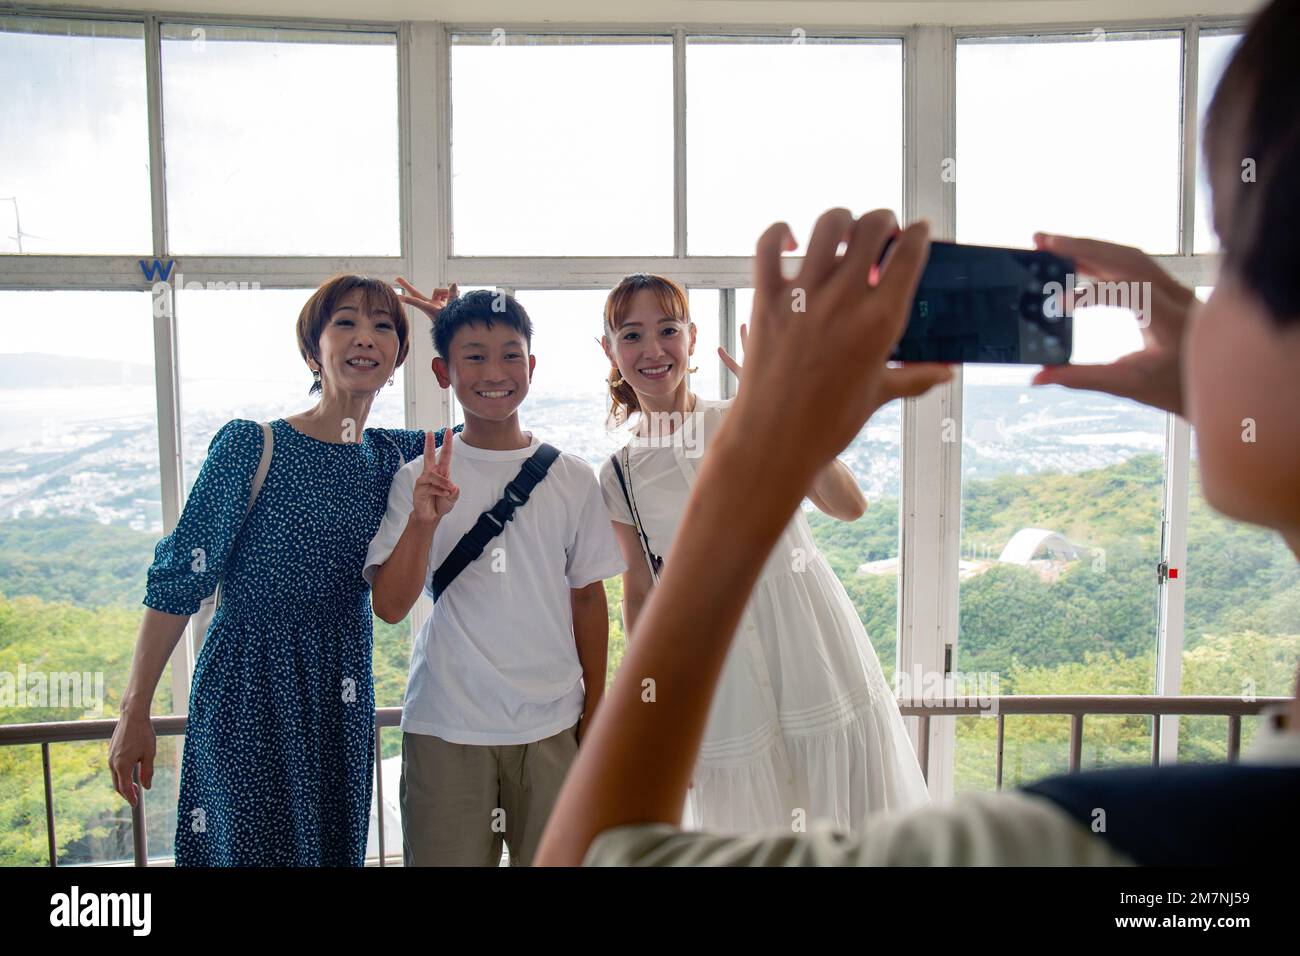 Ein Junge, der mit seinem Handy drei Personen fotografiert, einen 13-jährigen Jungen, seine Mutter und einen Freund. Stockfoto